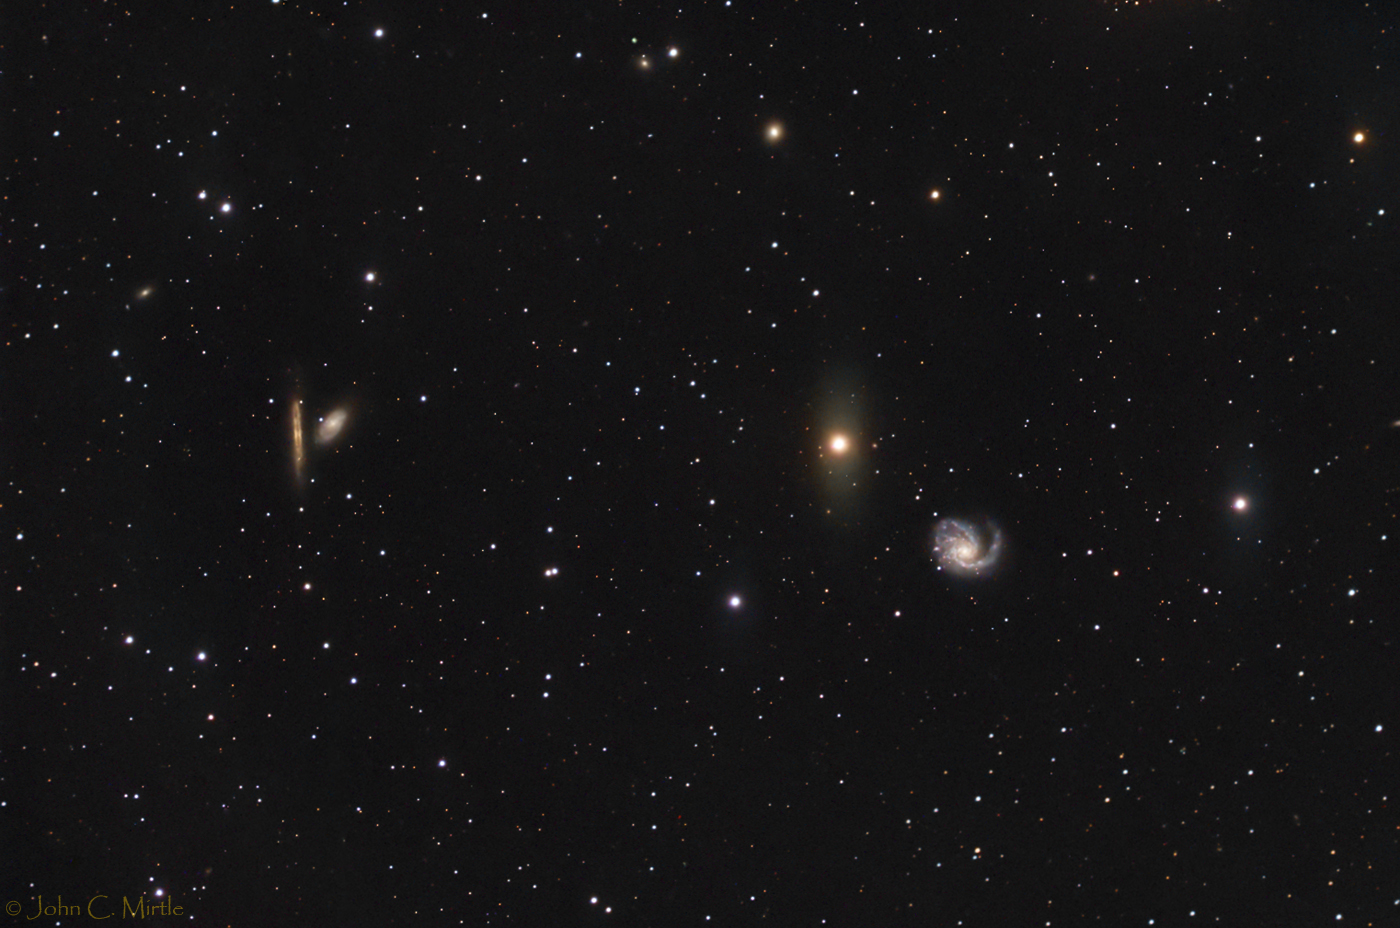 Galaxy Messier 98